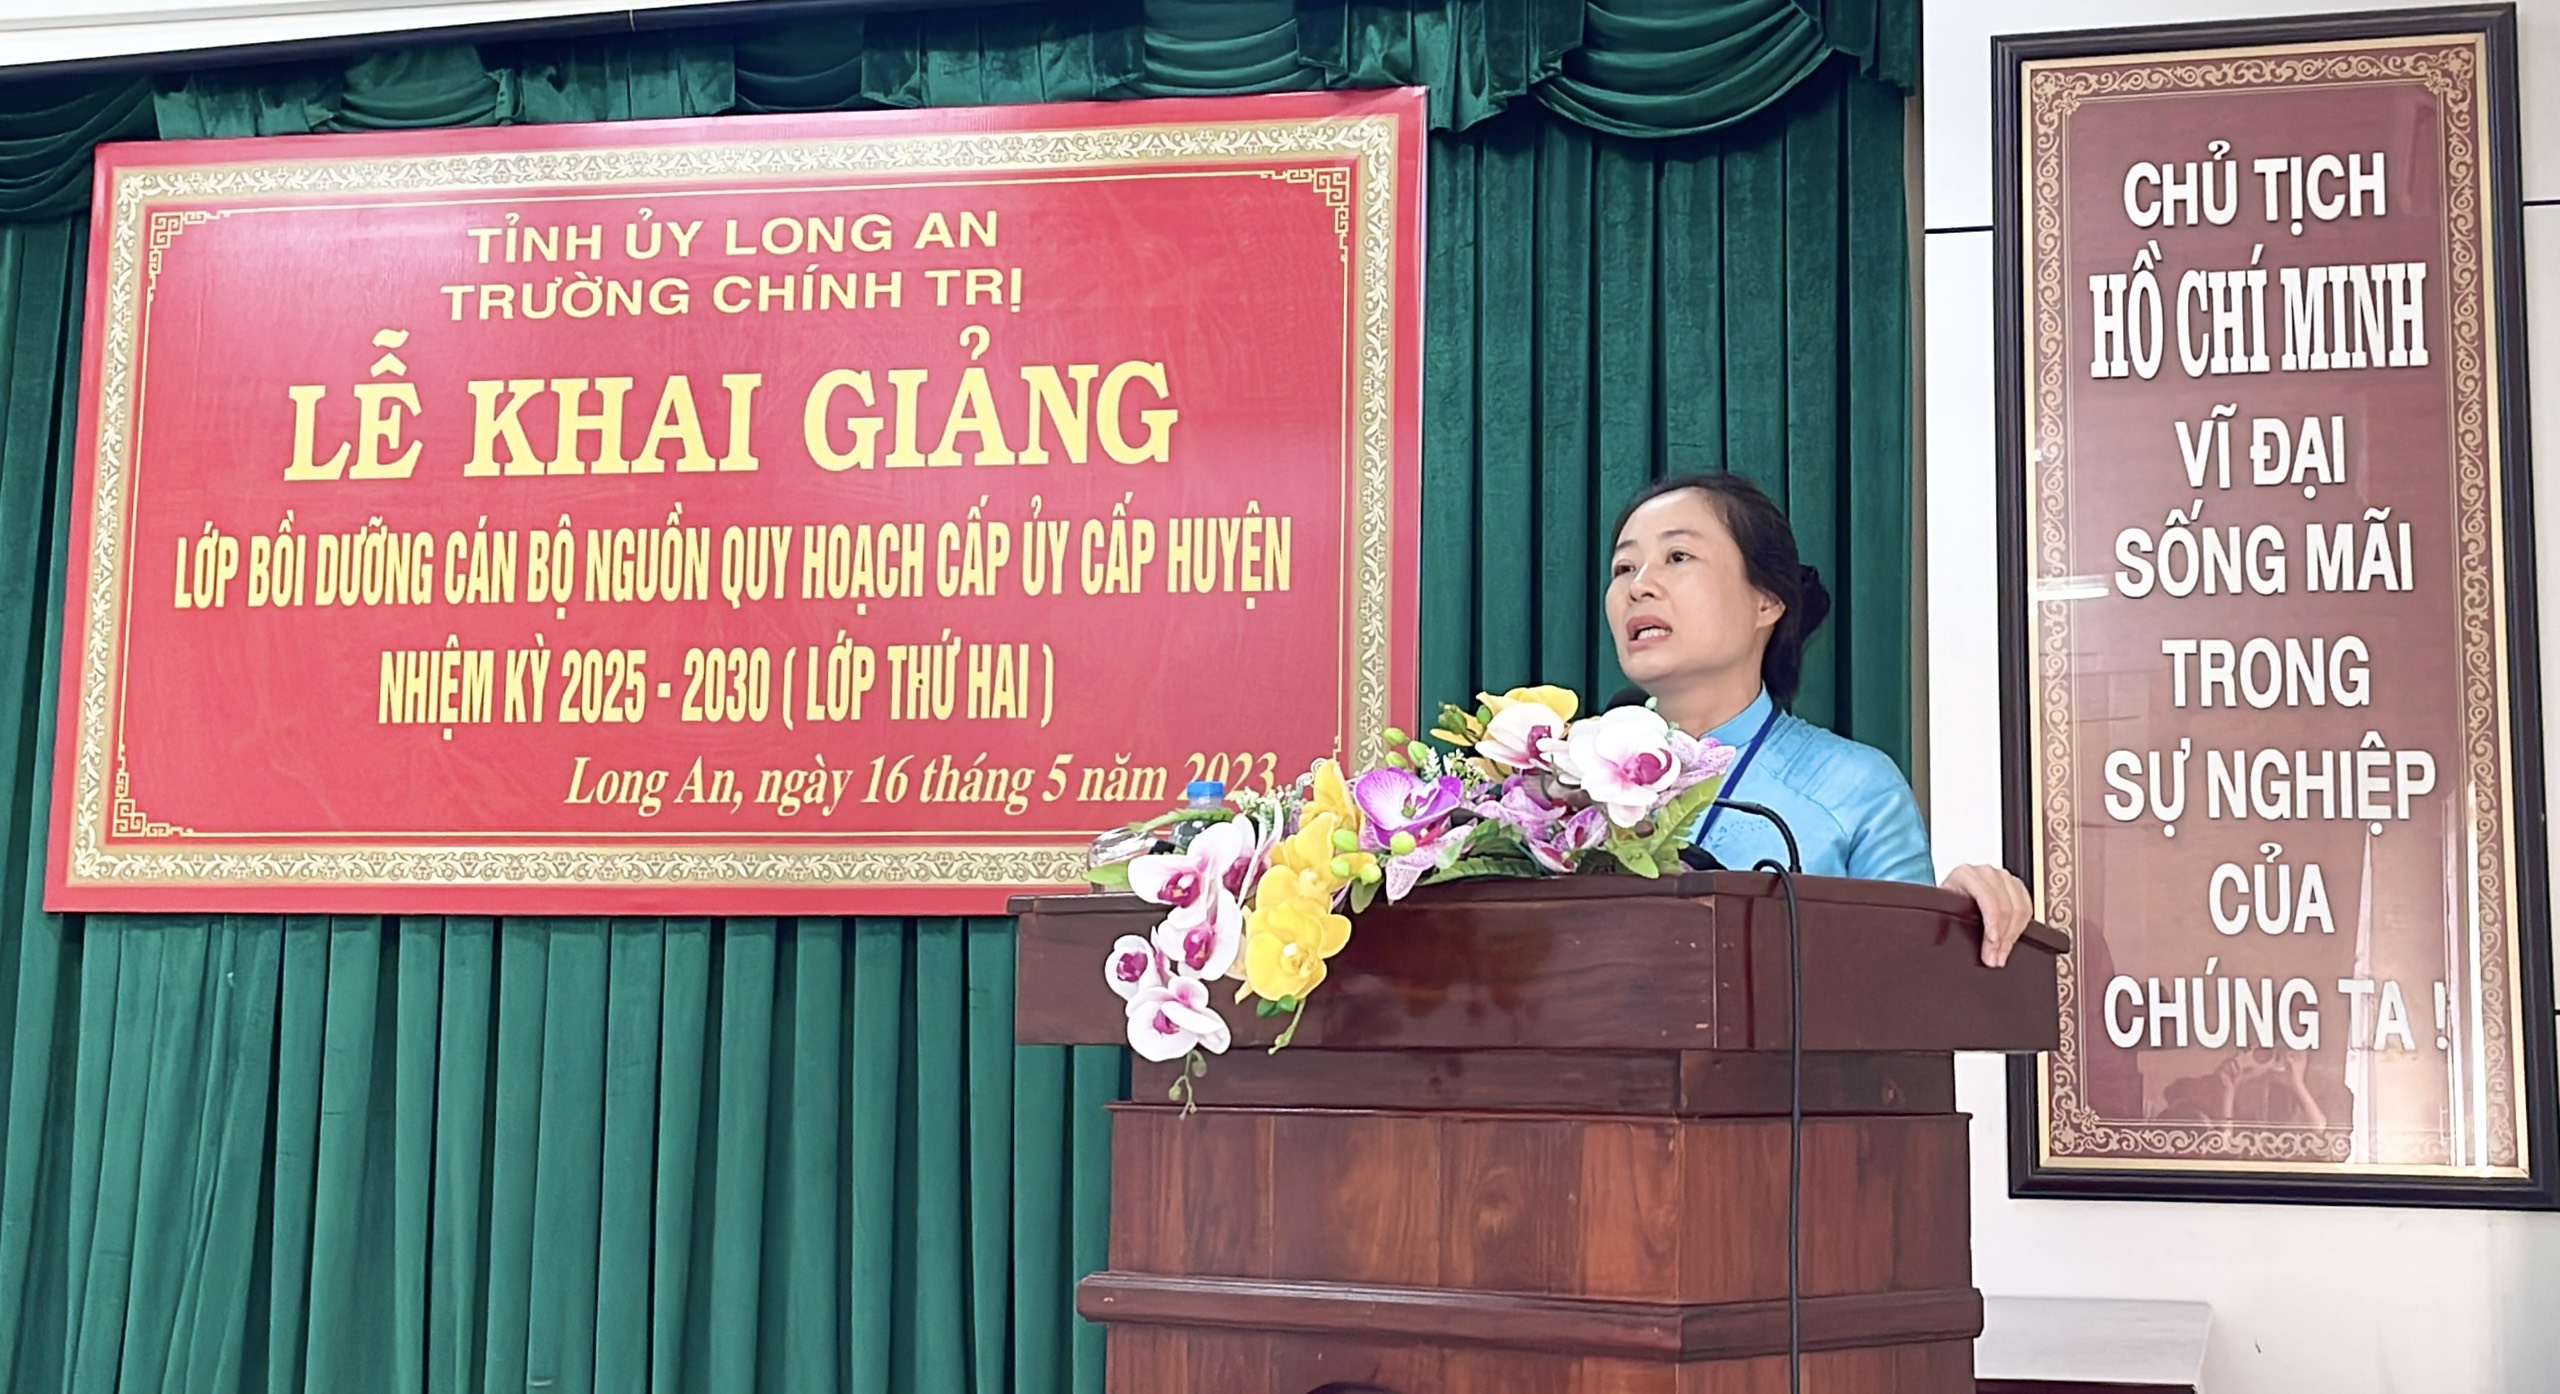 Hiệu trưởng trường Chính trị Long An - Huỳnh Thị Thu Năm phát biểu tại lễ khai giảng